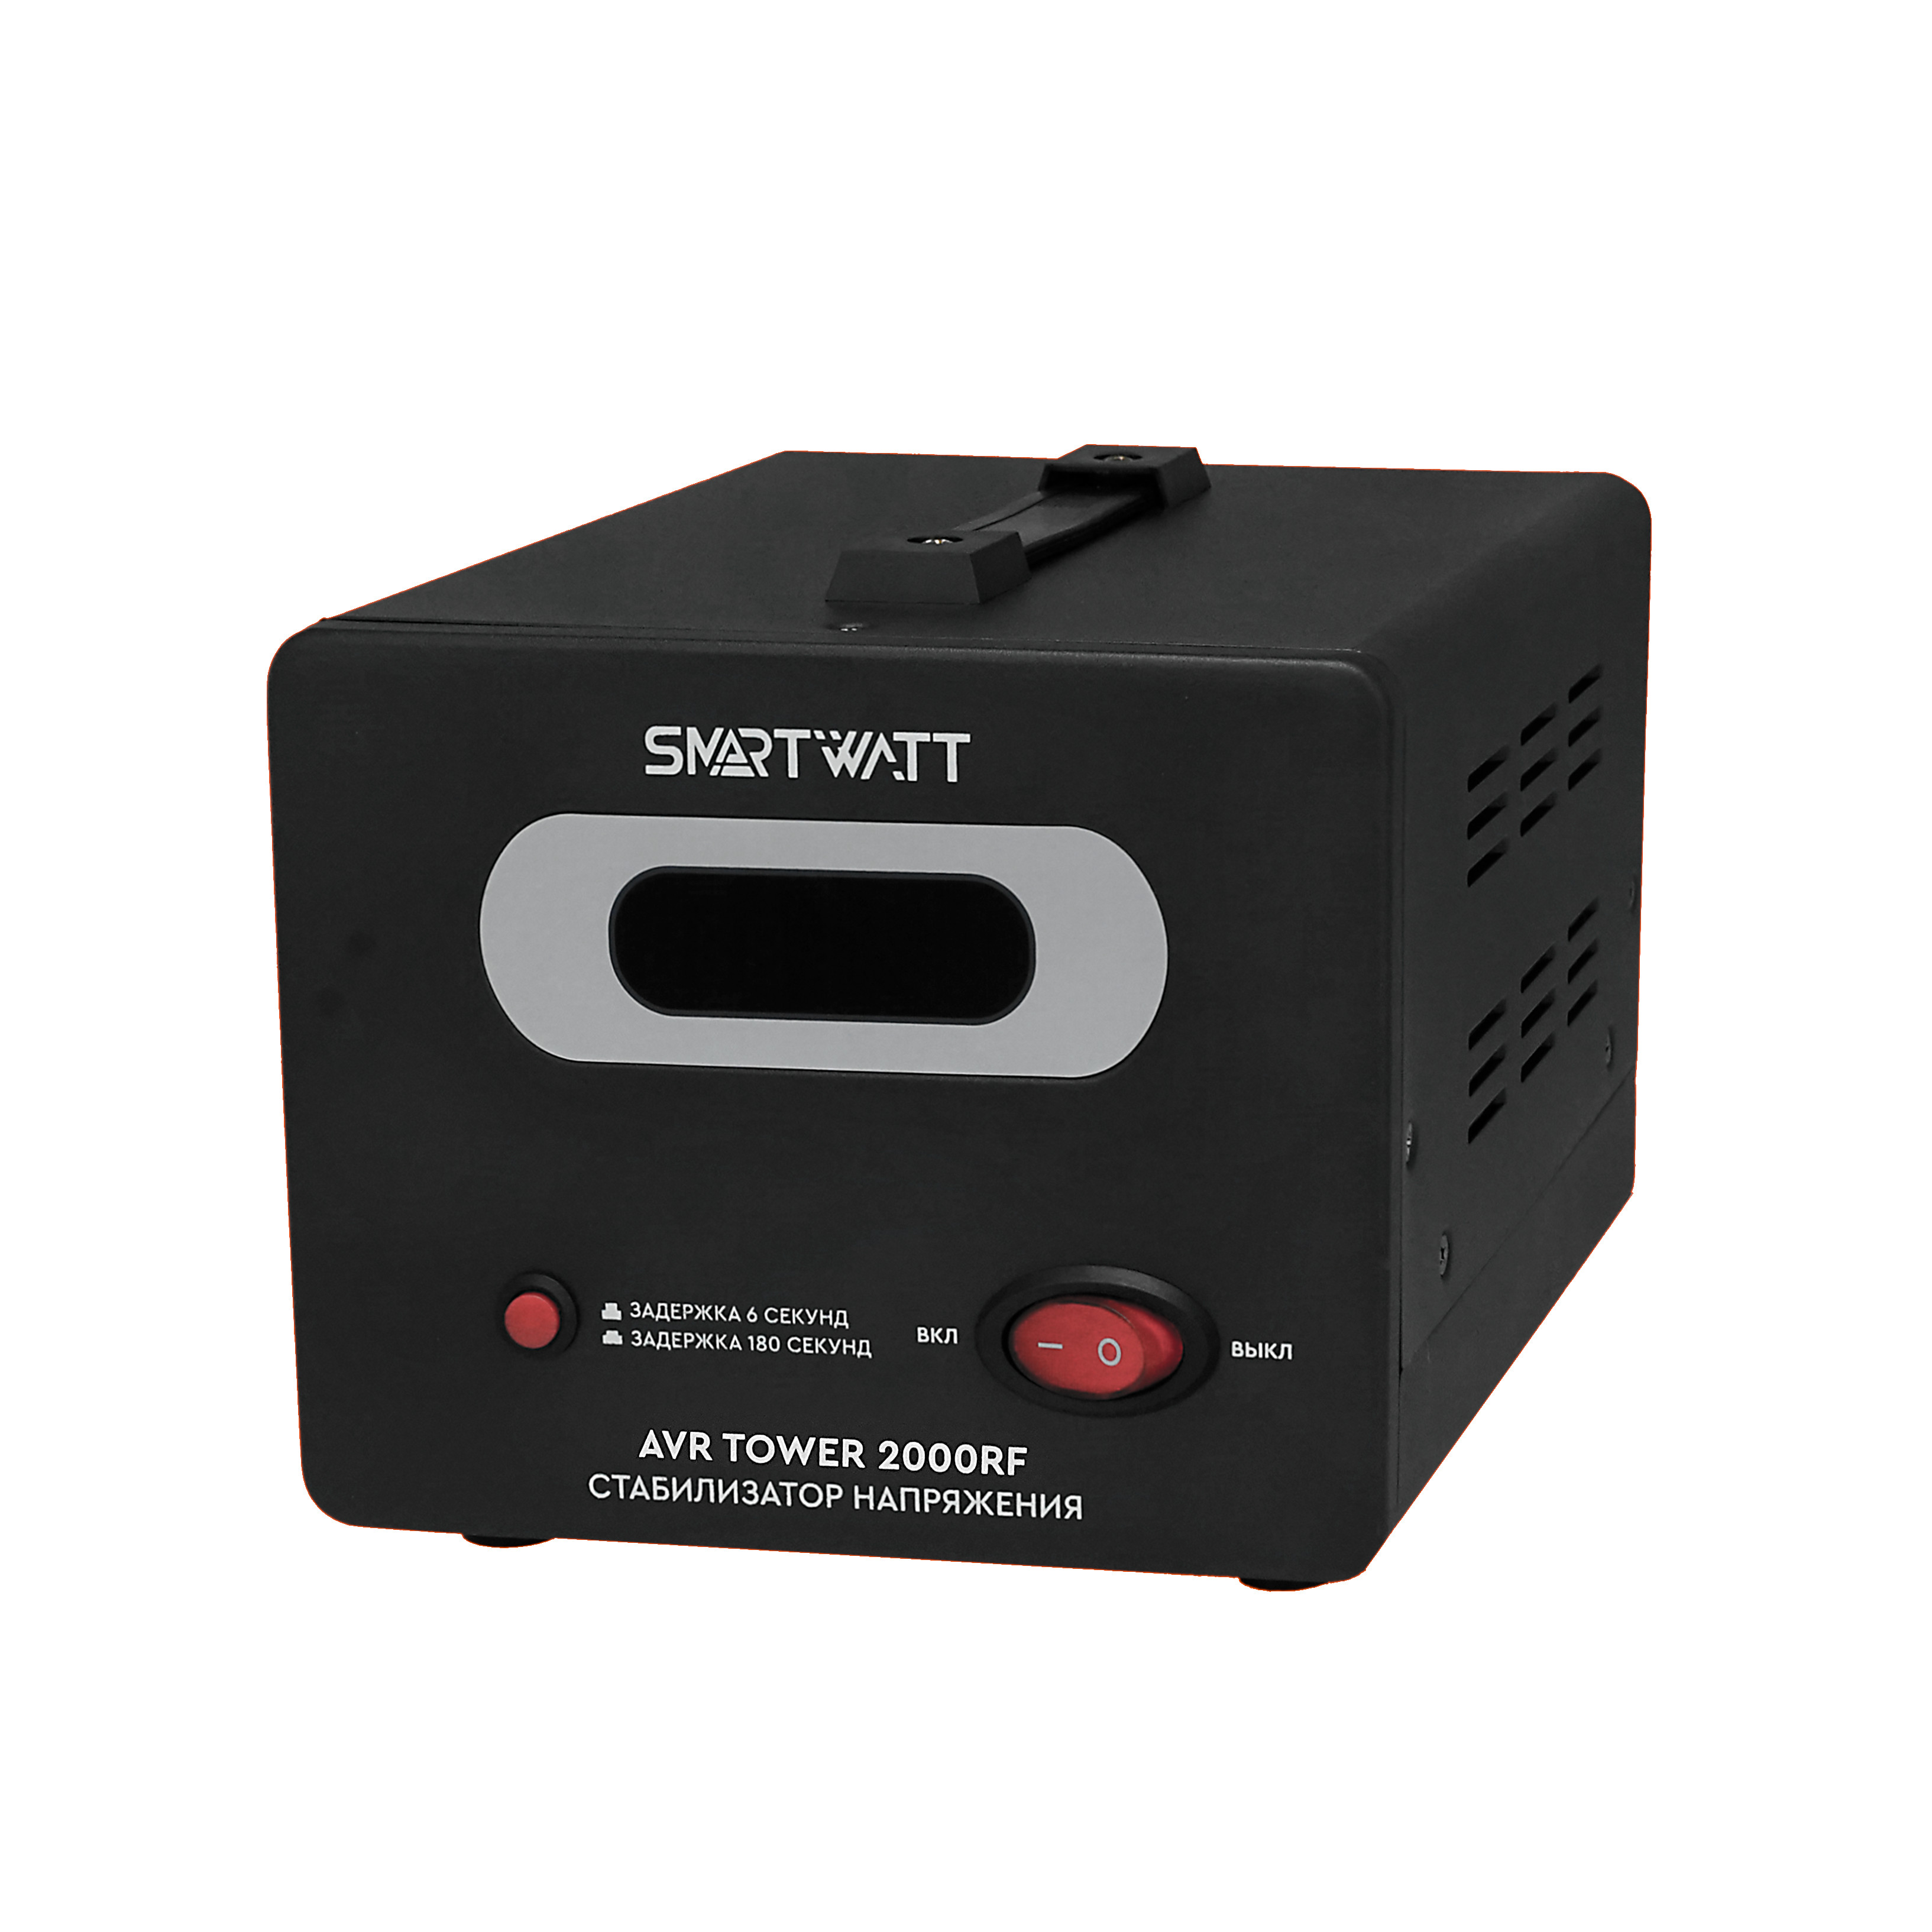 Стабилизатор напряжения SMARTWATT AVR TOWER 2000RF, 2000 VA, клеммная колодка, черный (4512020370008)